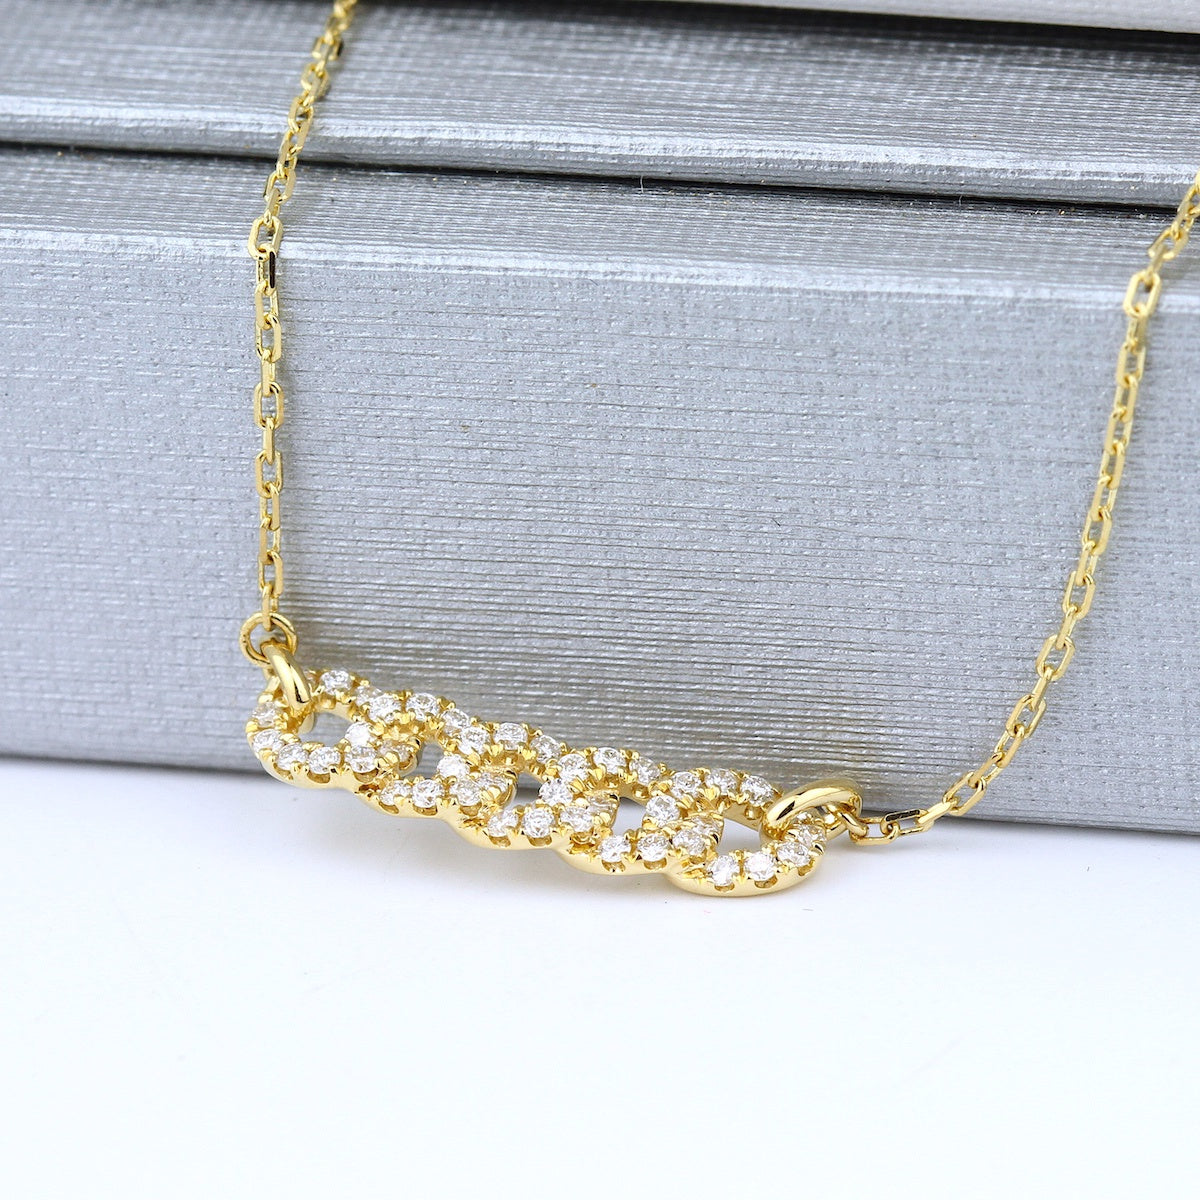 Parade 18K White Gold Diamond Link Pave Necklace